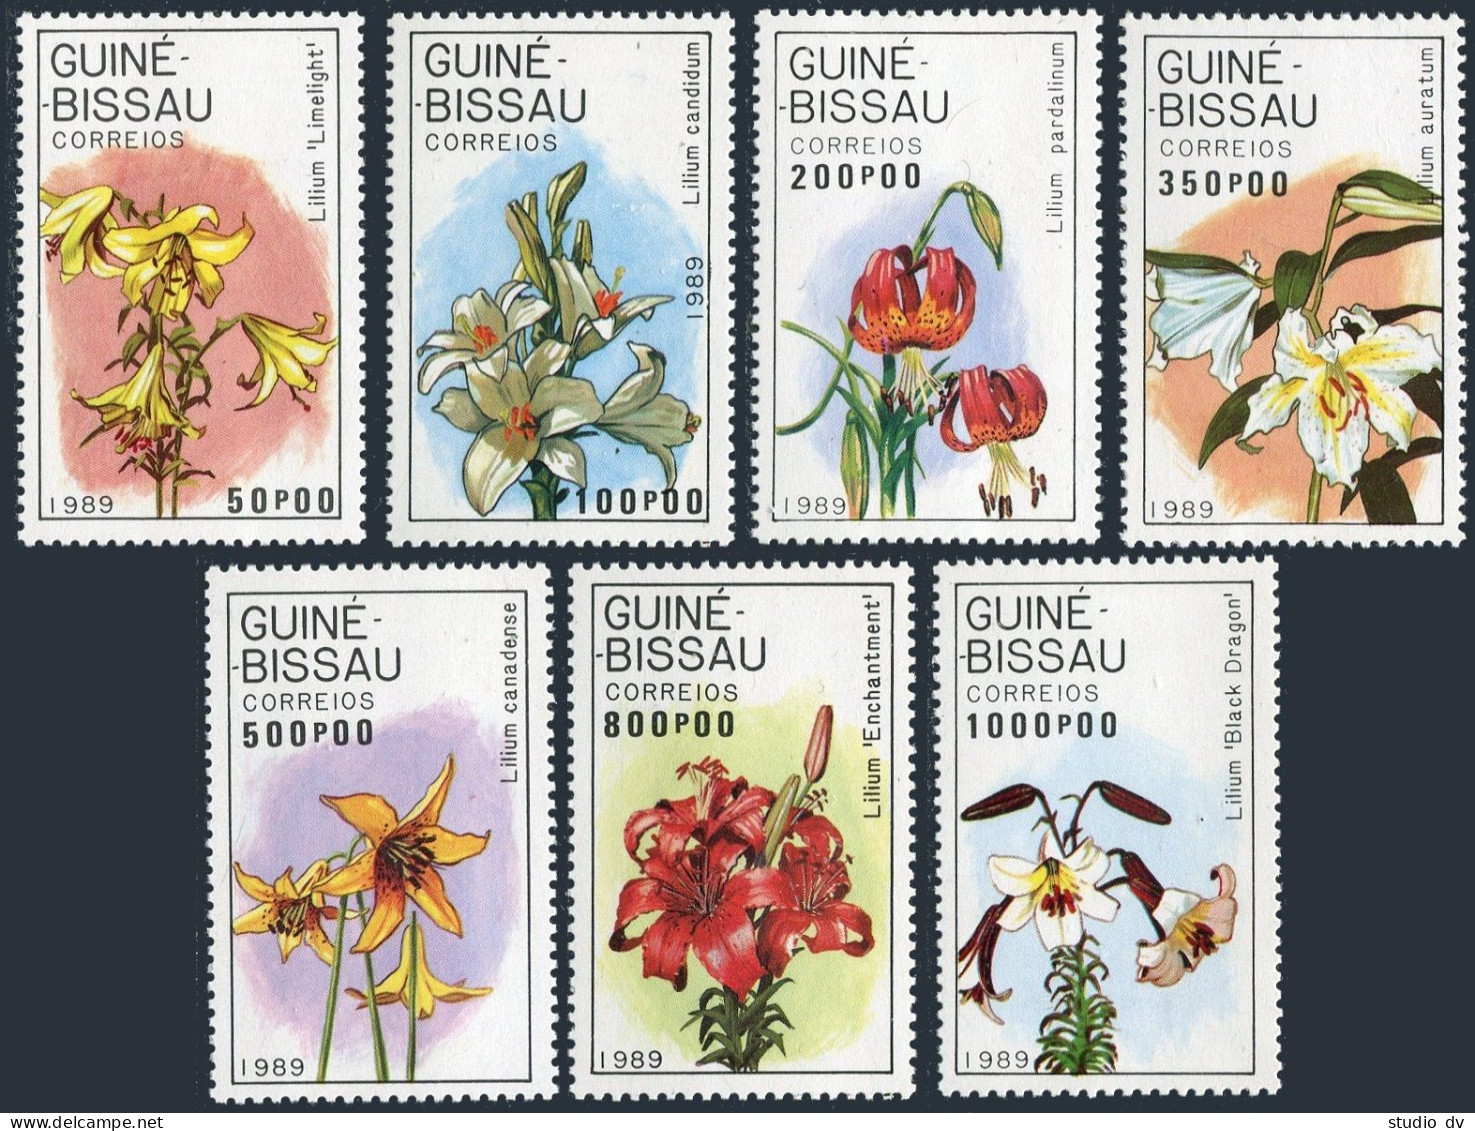 Guinea Bissau 787-793,794,MNH.Michel 1049-1055,Bl.278. Flowers 1989.Lilies. - Guinée-Bissau